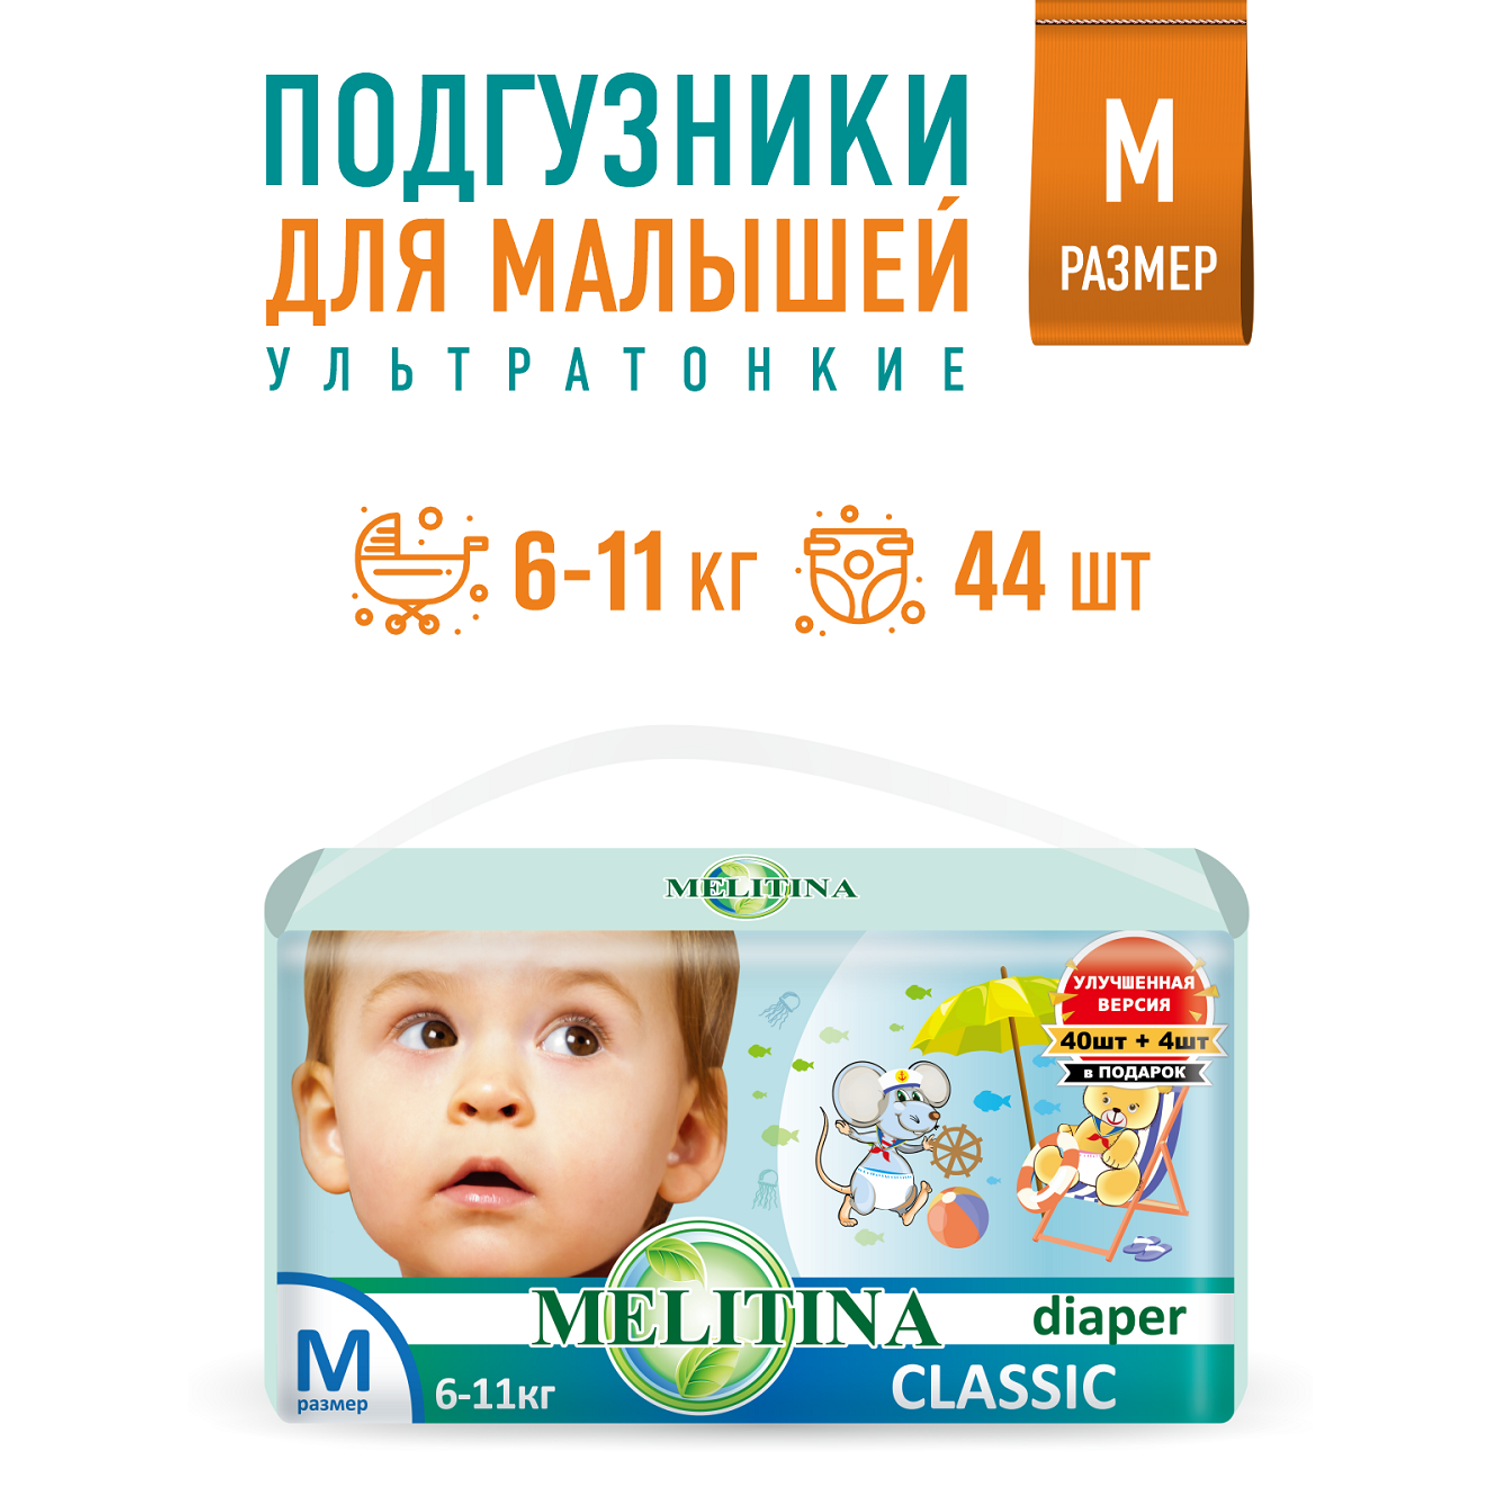 Подгузники Melitina для детей Classic размер M 6-11 кг 44 шт 50-8440 - фото 1